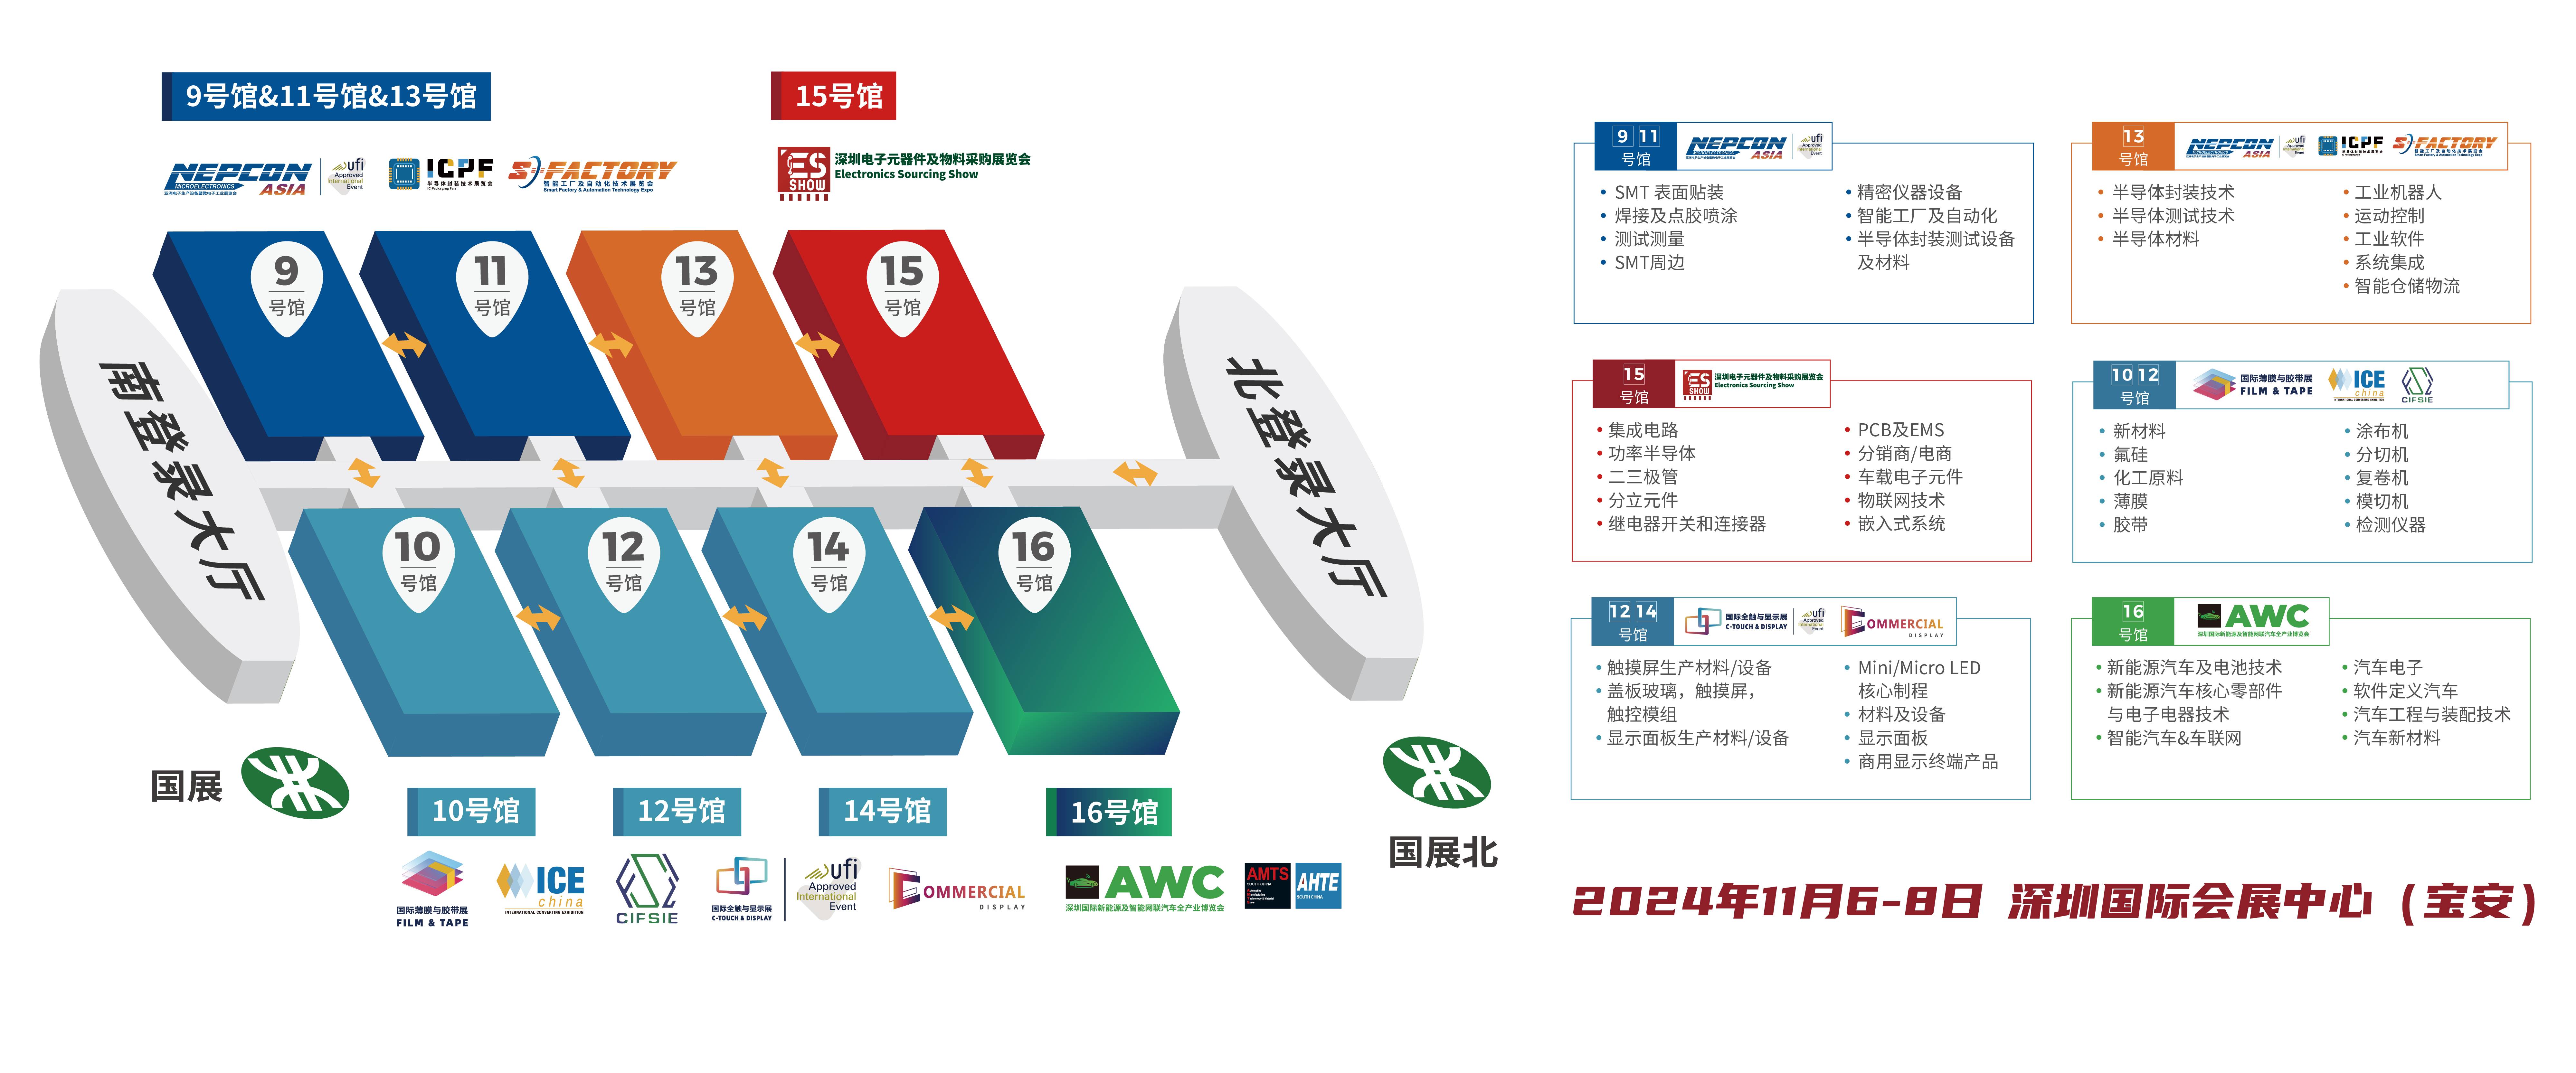 深圳电子展 ESSHOW  锂离子电池 新能源电池